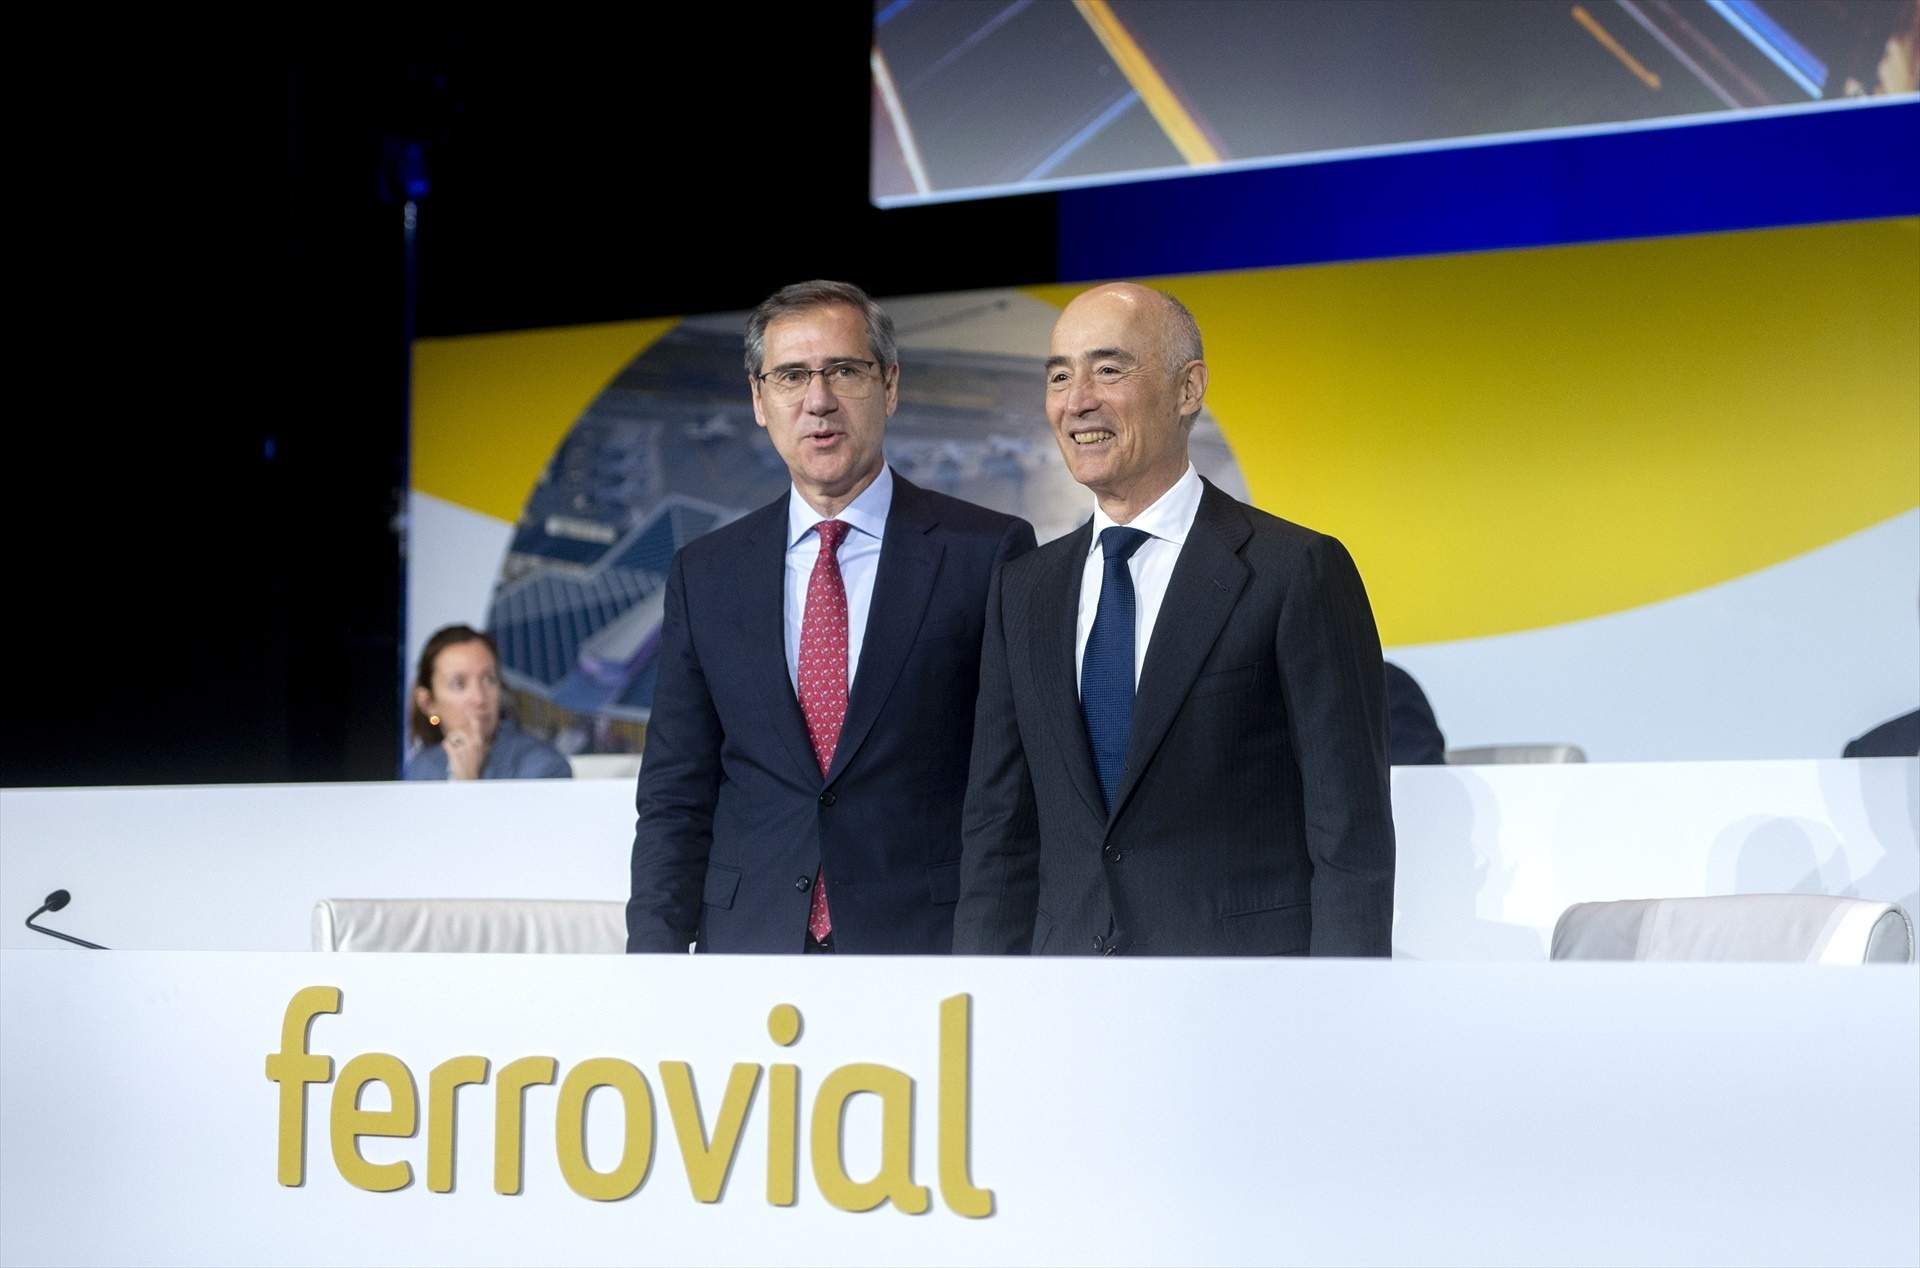 Ferrovial preveu debutar al Nasdaq el 9 de maig després d'acabar el procés de revisió reguladora